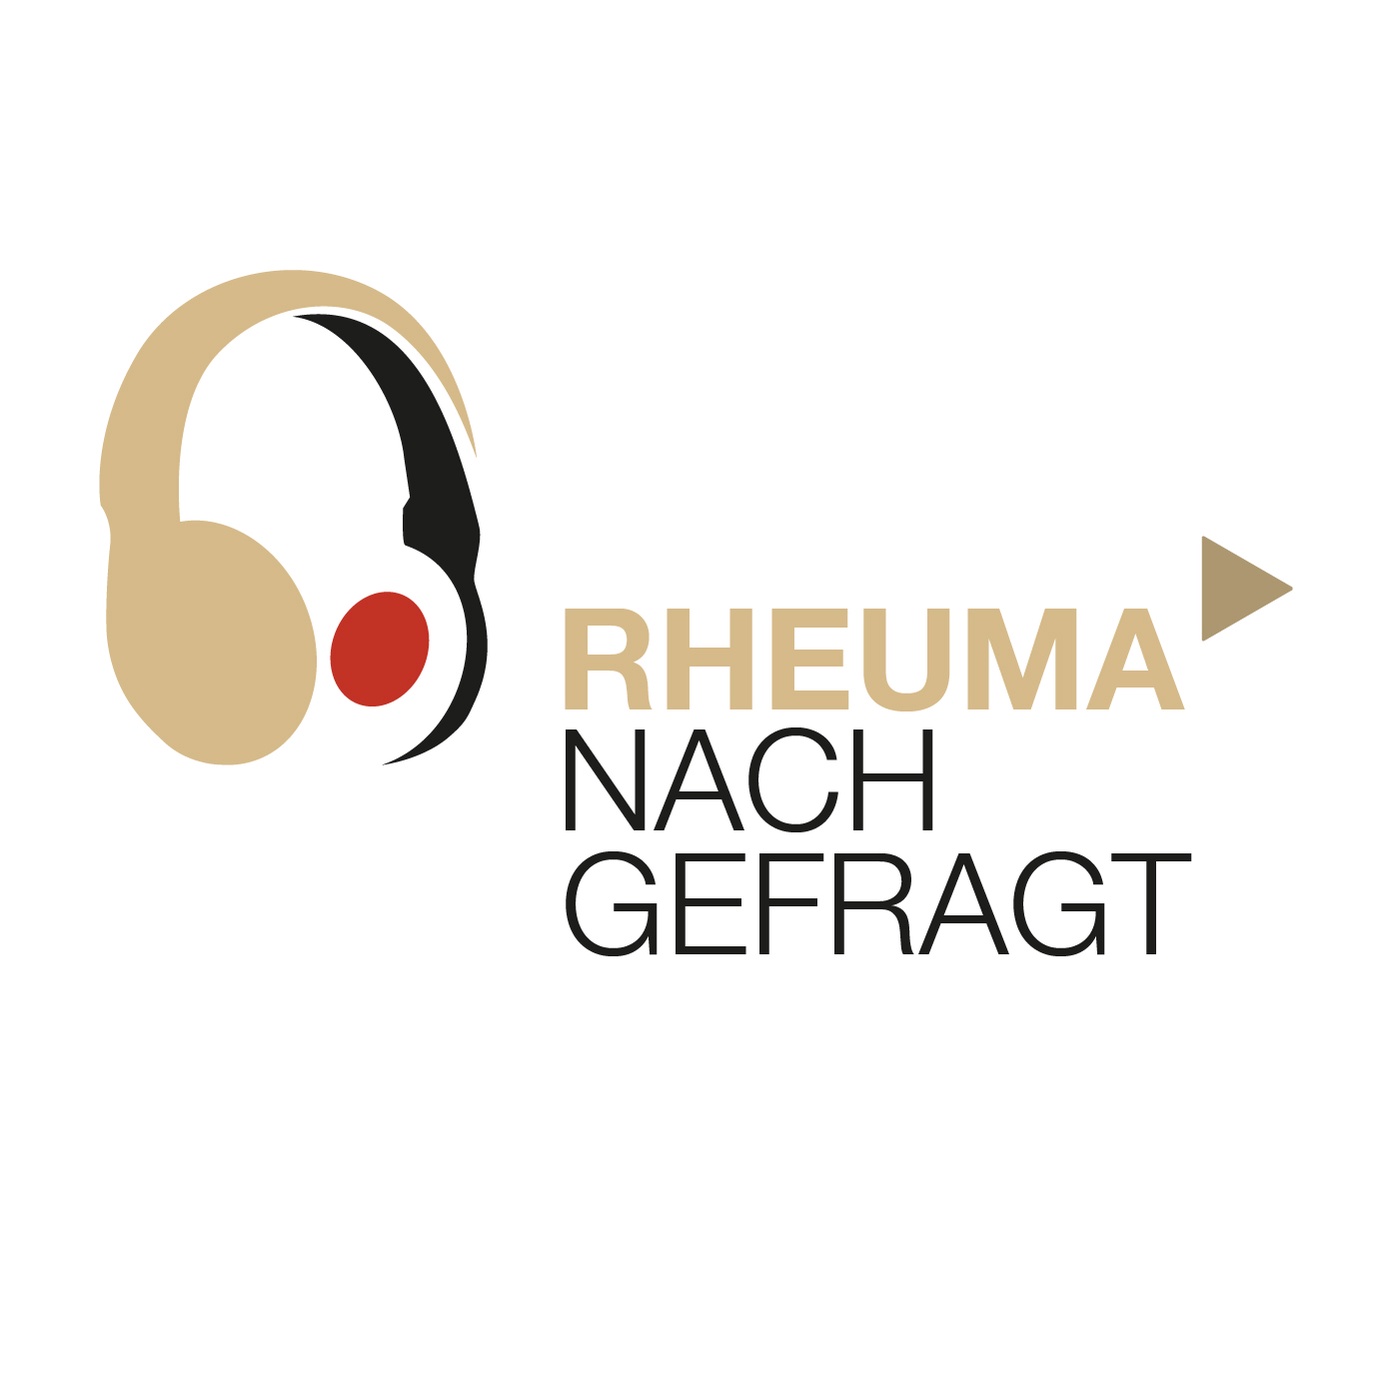 Rheuma nachgefragt - Der Podcast aus der Praxis für die Praxis